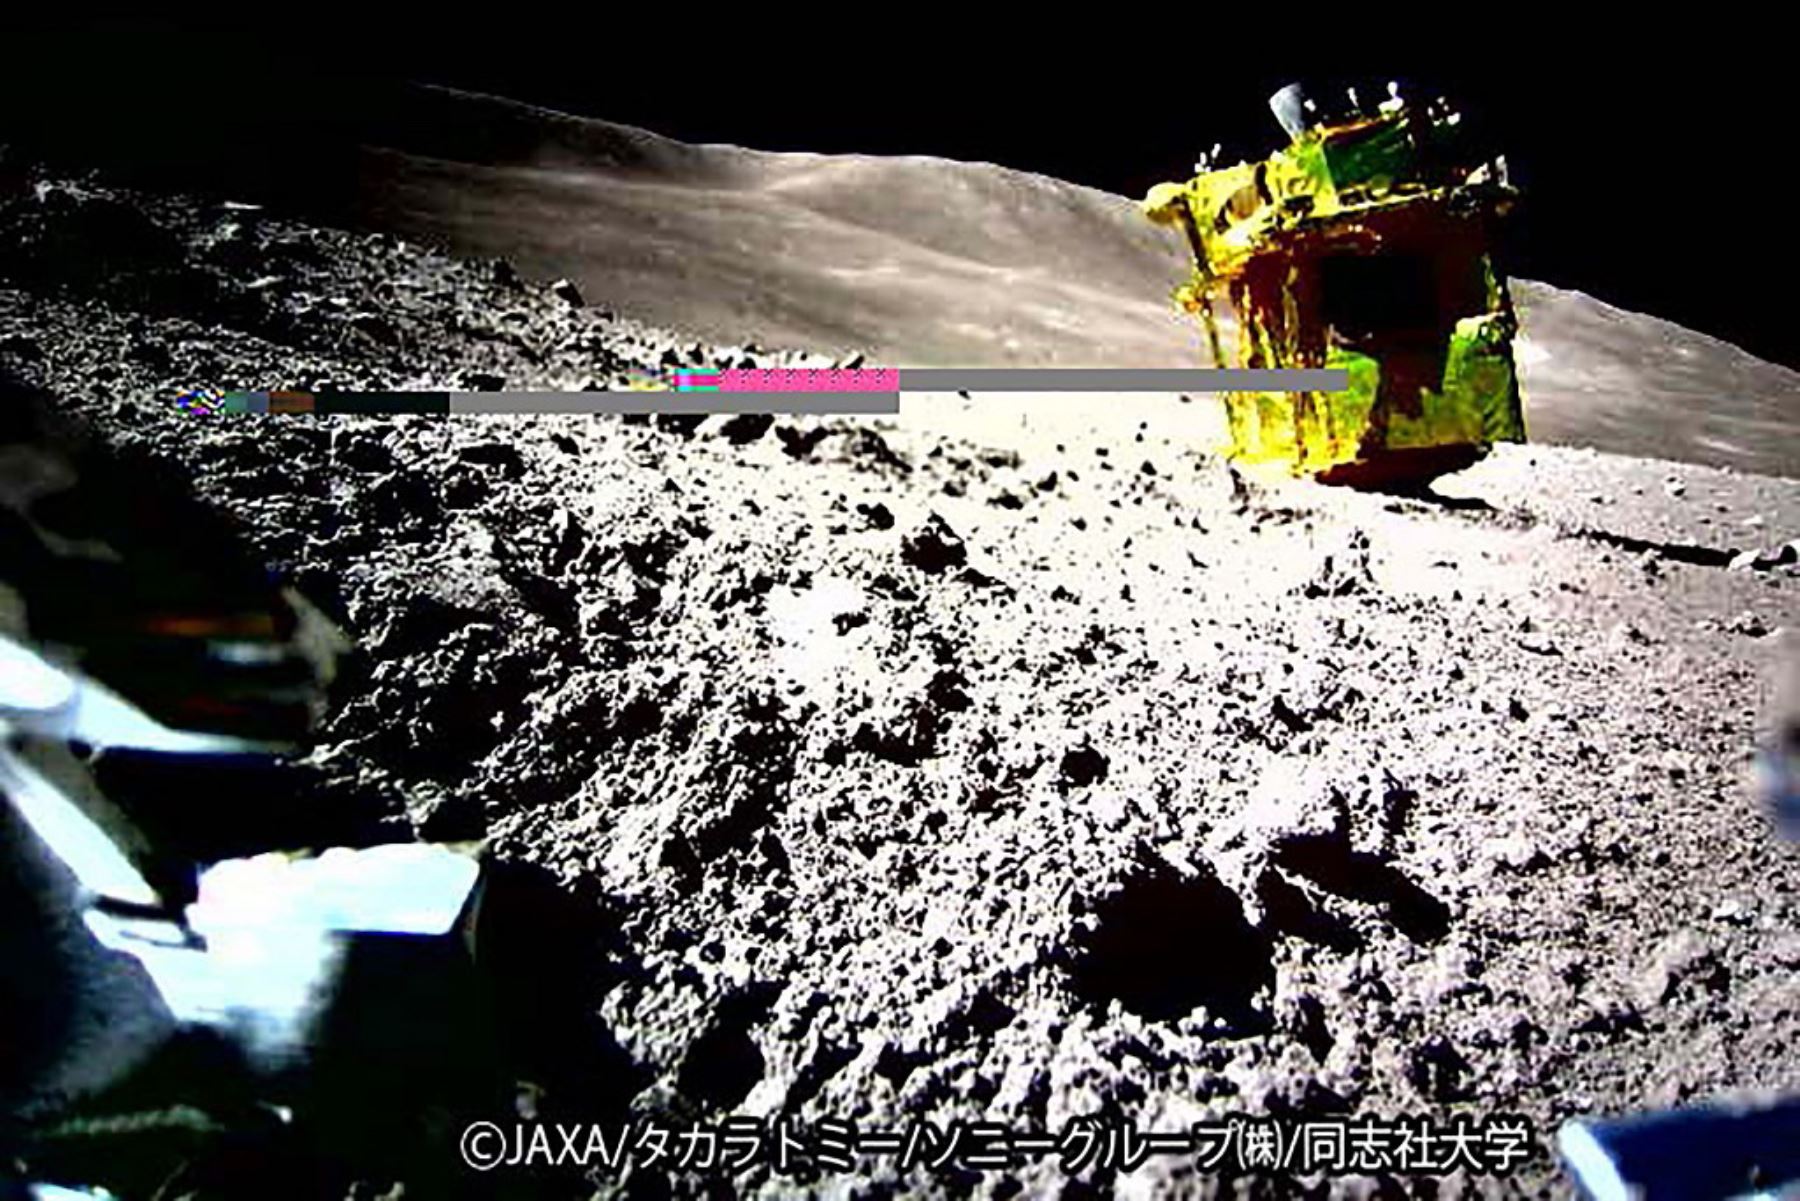 Imagen de la superficie lunar tomada y transmitida por LEV-2 "SORA-Q " el robot transformable de superficie lunar "SORA-Q" , tras su aterrizaje en la Luna. Foto: AFP